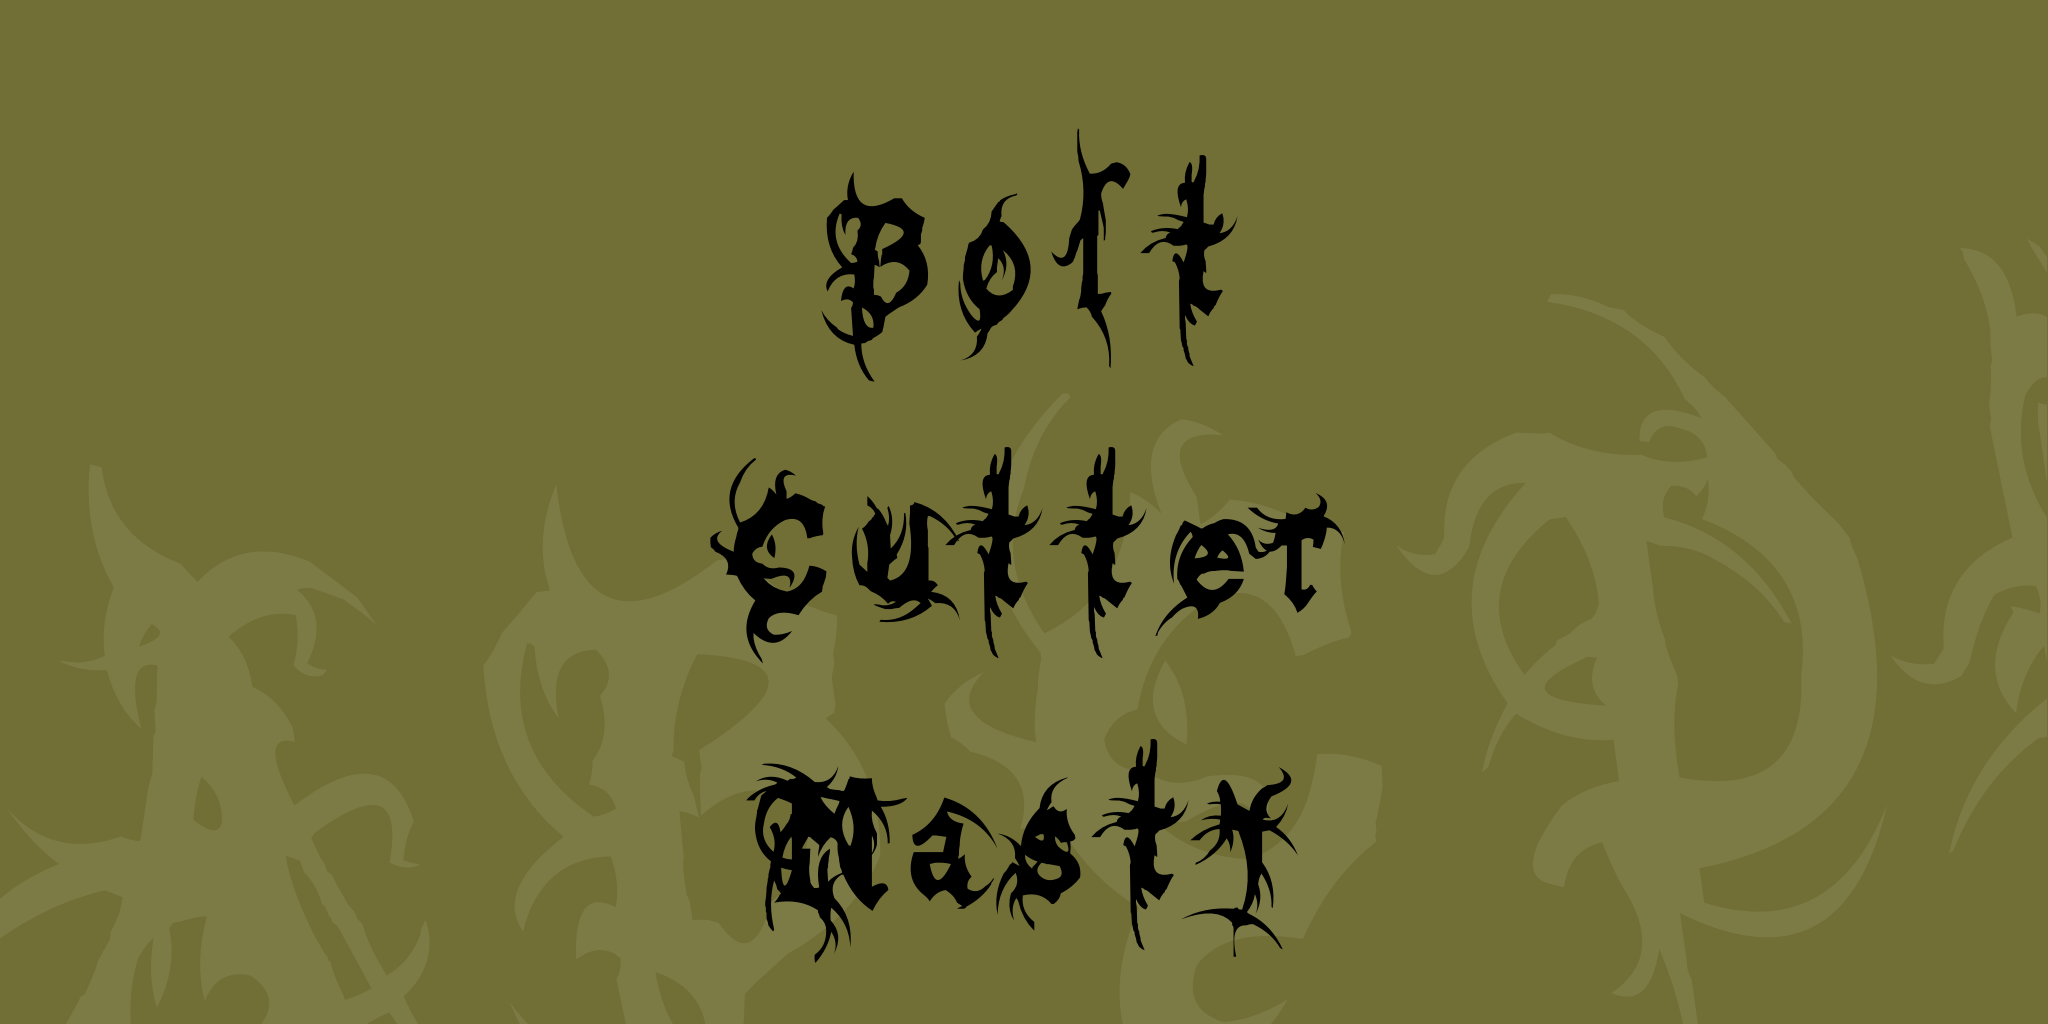 Bolt Cutter Nasty